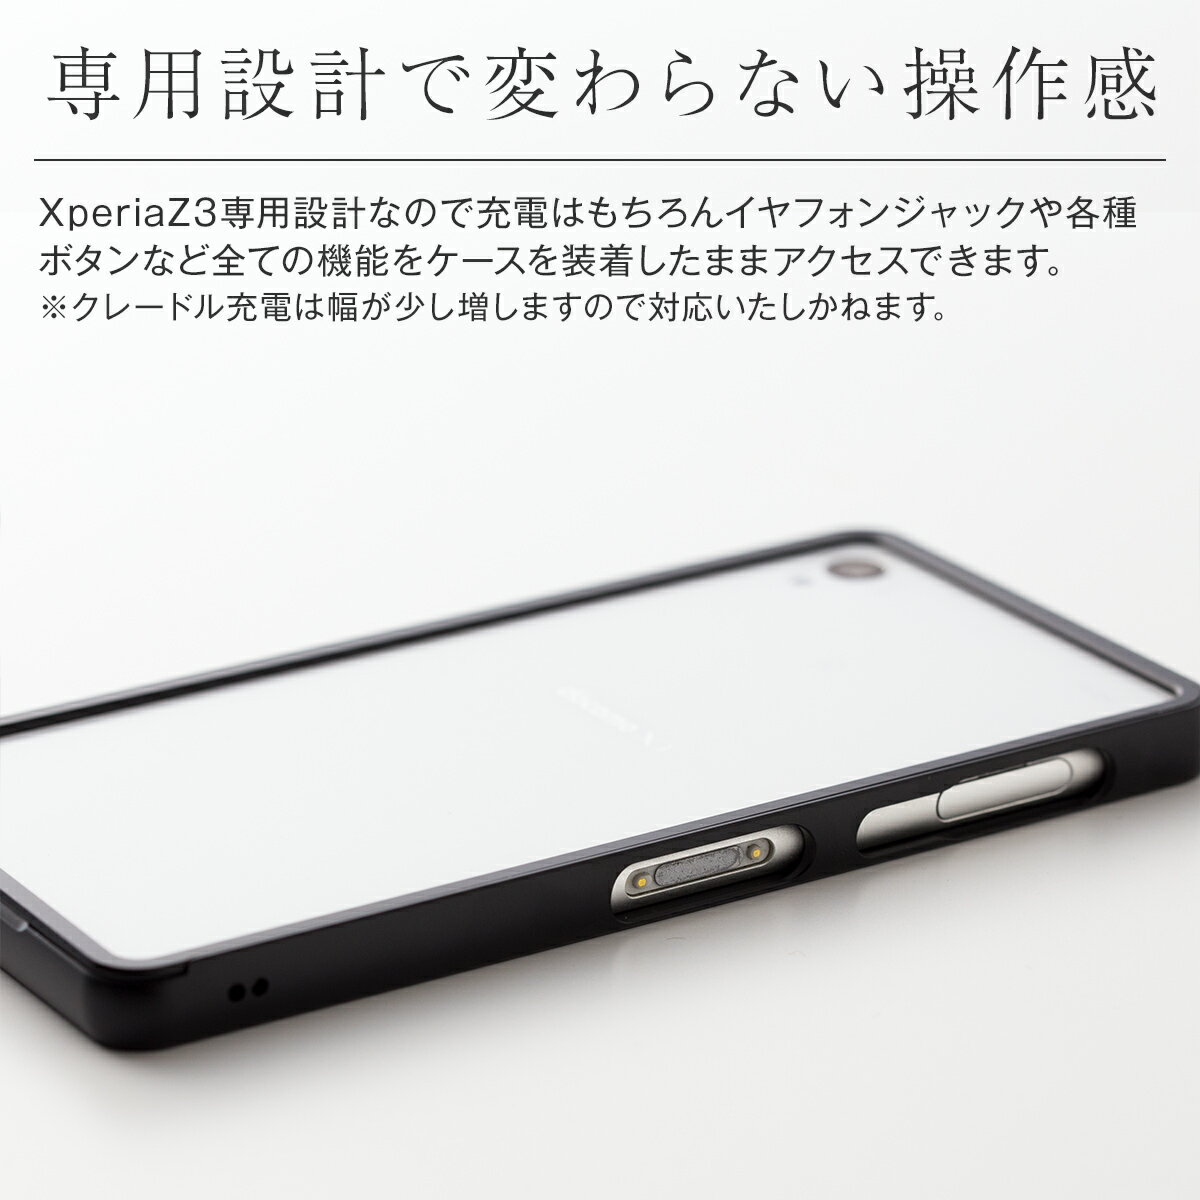 送料無料 Xperia Z3 エクスペリアZ3 SO-01G/SOL26 アルミメタルバンパー | アルミ メタルケース メタルバンパー バンパーケース スマホケース スマホ スマートフォン スマホカバー Android アンドロイド エクスペリア Xperia Z3